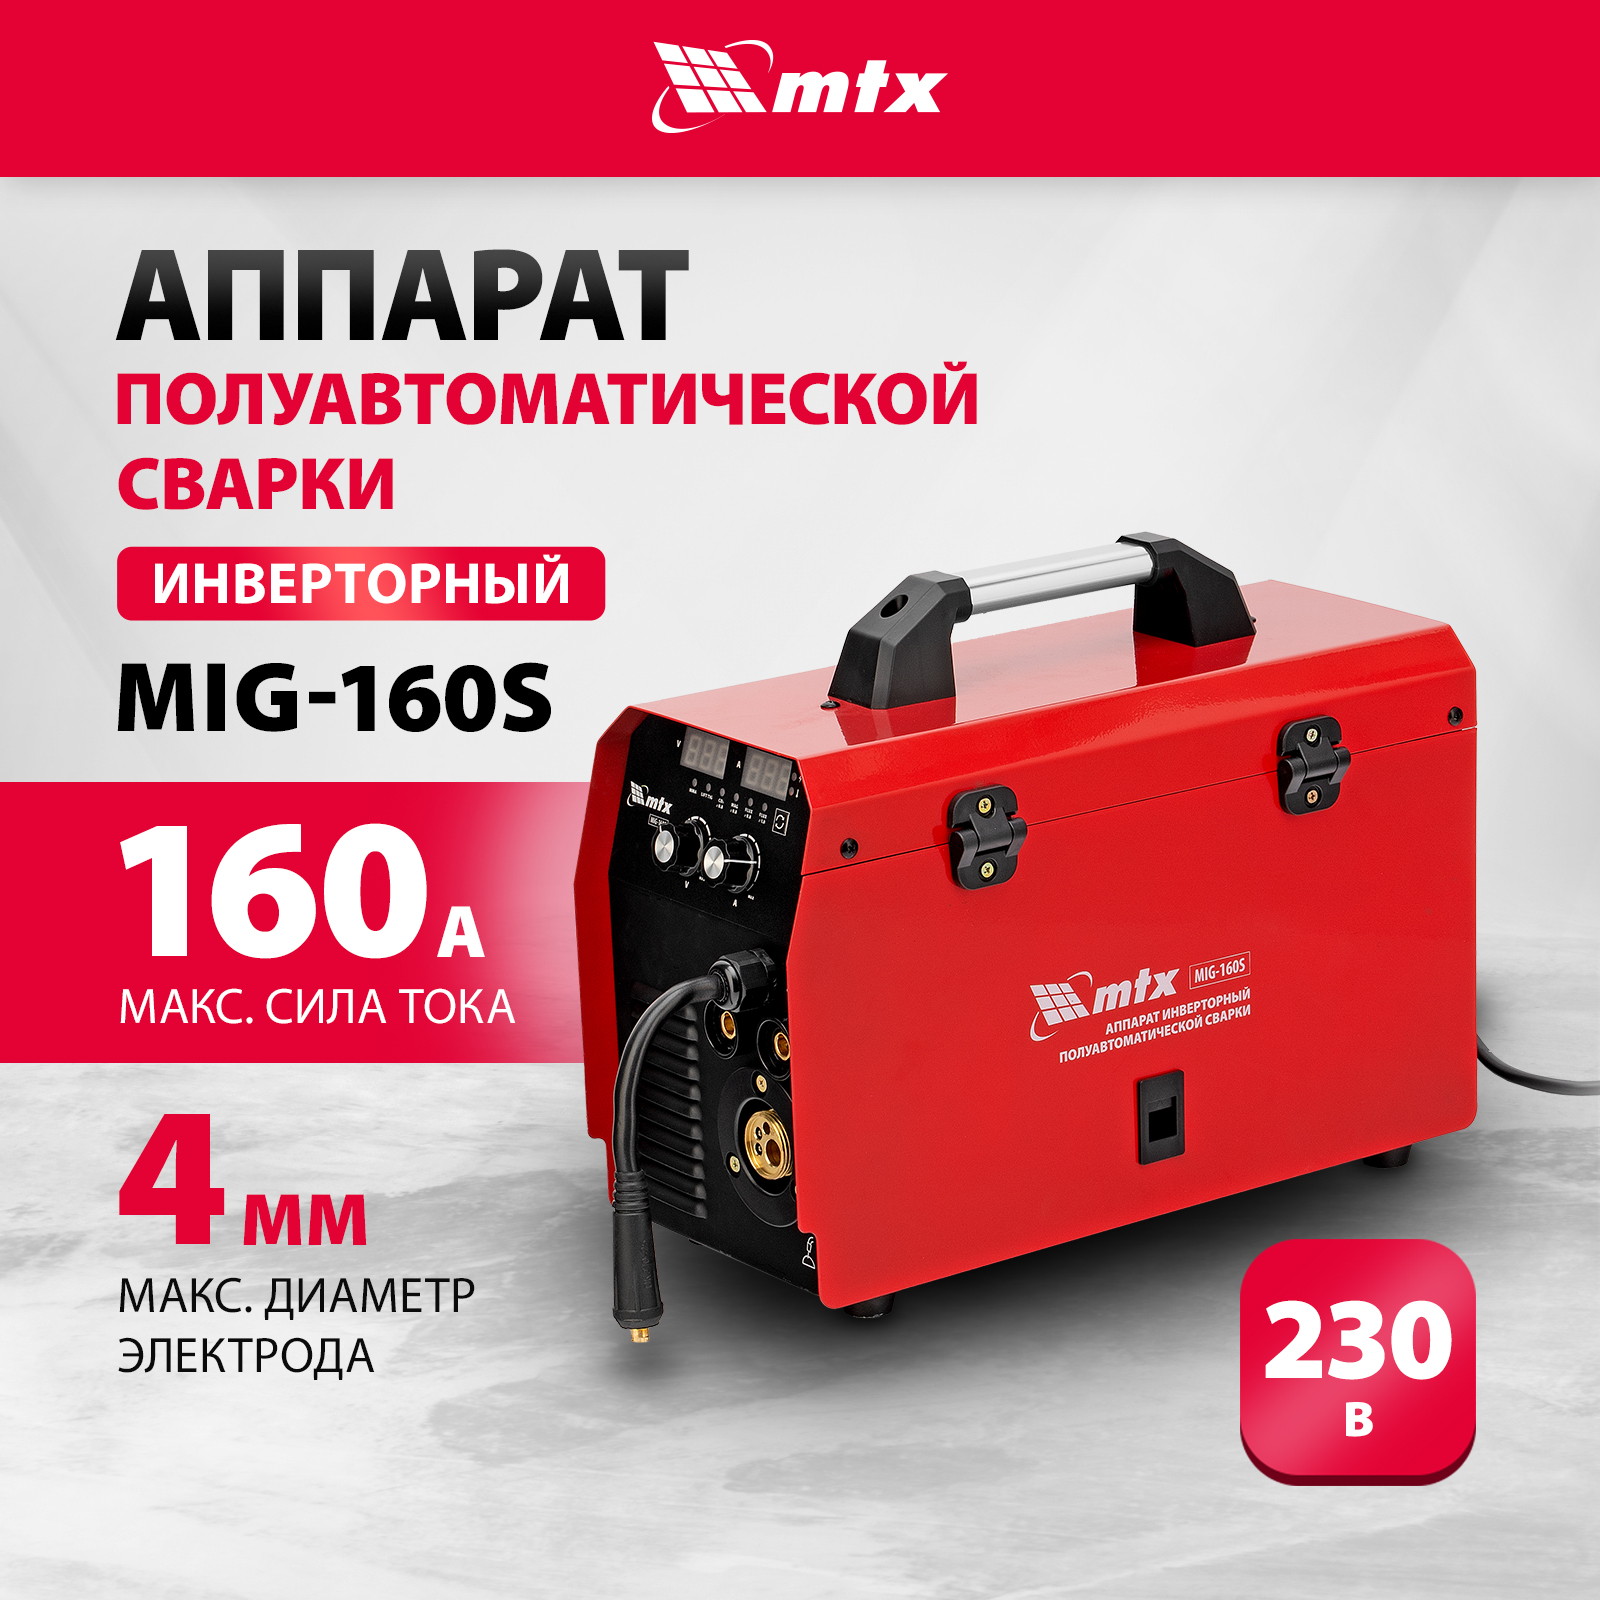 Сварочный аппарат-полуавтомат инверторный MTX MIG-160S, 160A, ПВ 60%, катушка 5 кг 94301 сварочный аппарат redbo pro arc 160s